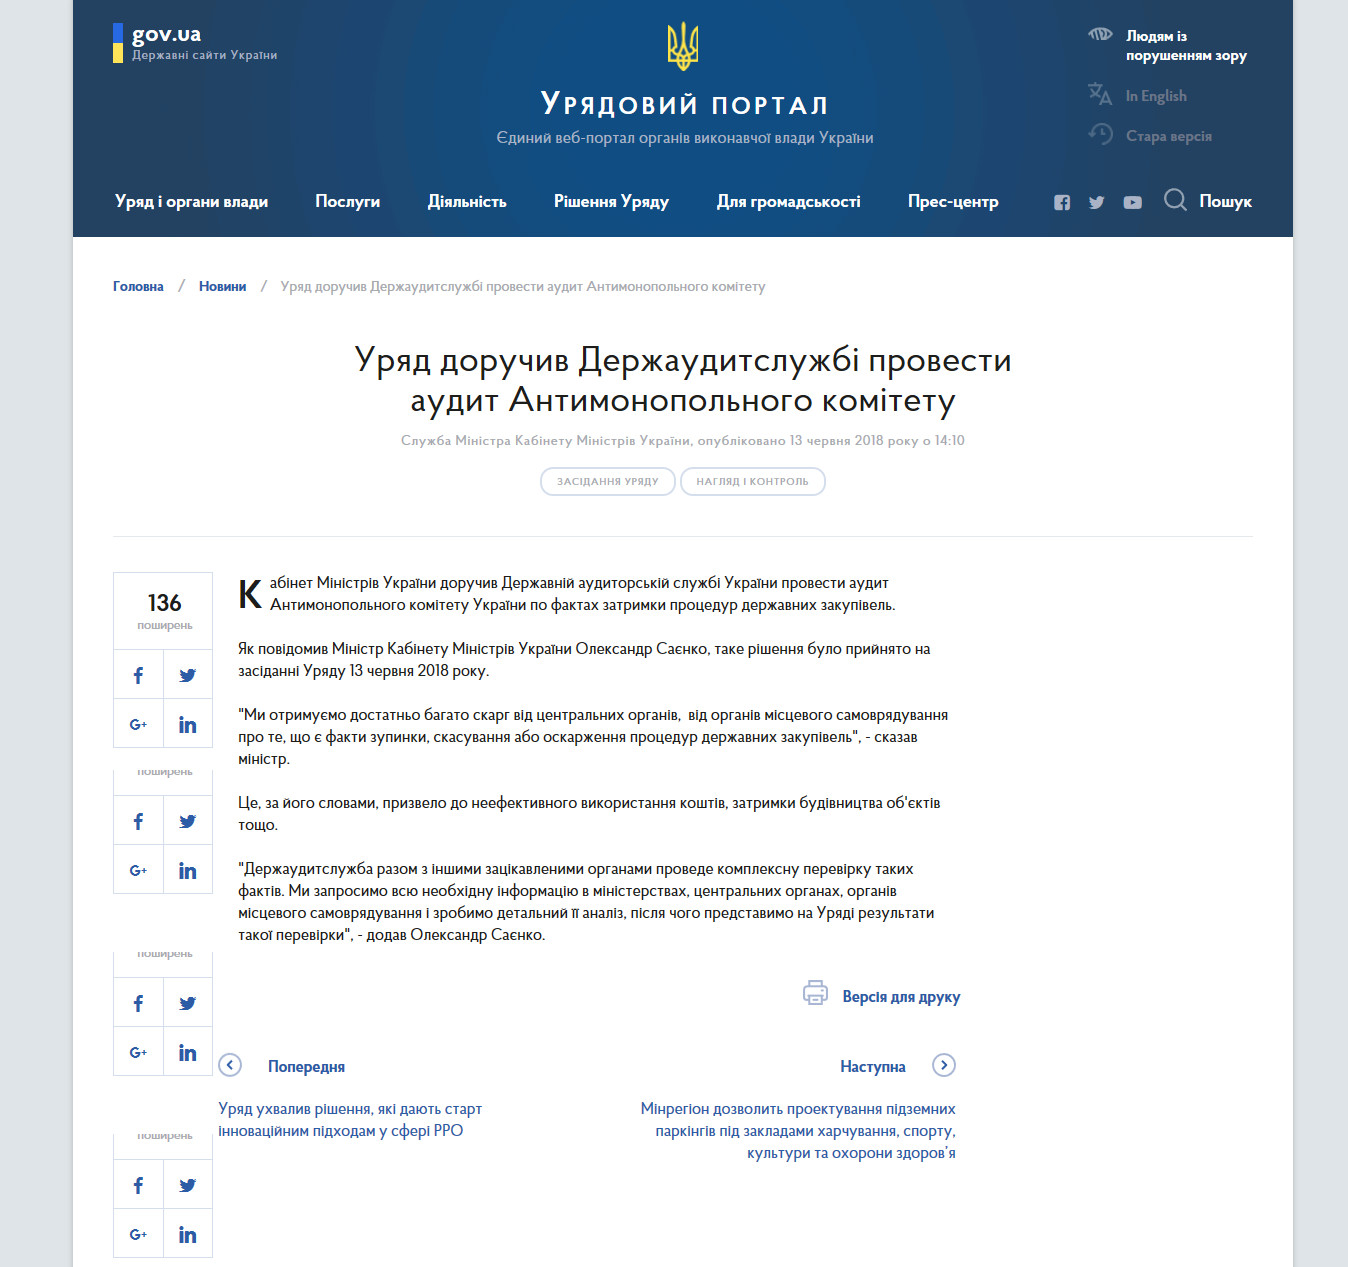 https://www.kmu.gov.ua/ua/news/uryad-doruchiv-derzhauditsluzhbi-provesti-audit-antimonopolnogo-komitetu